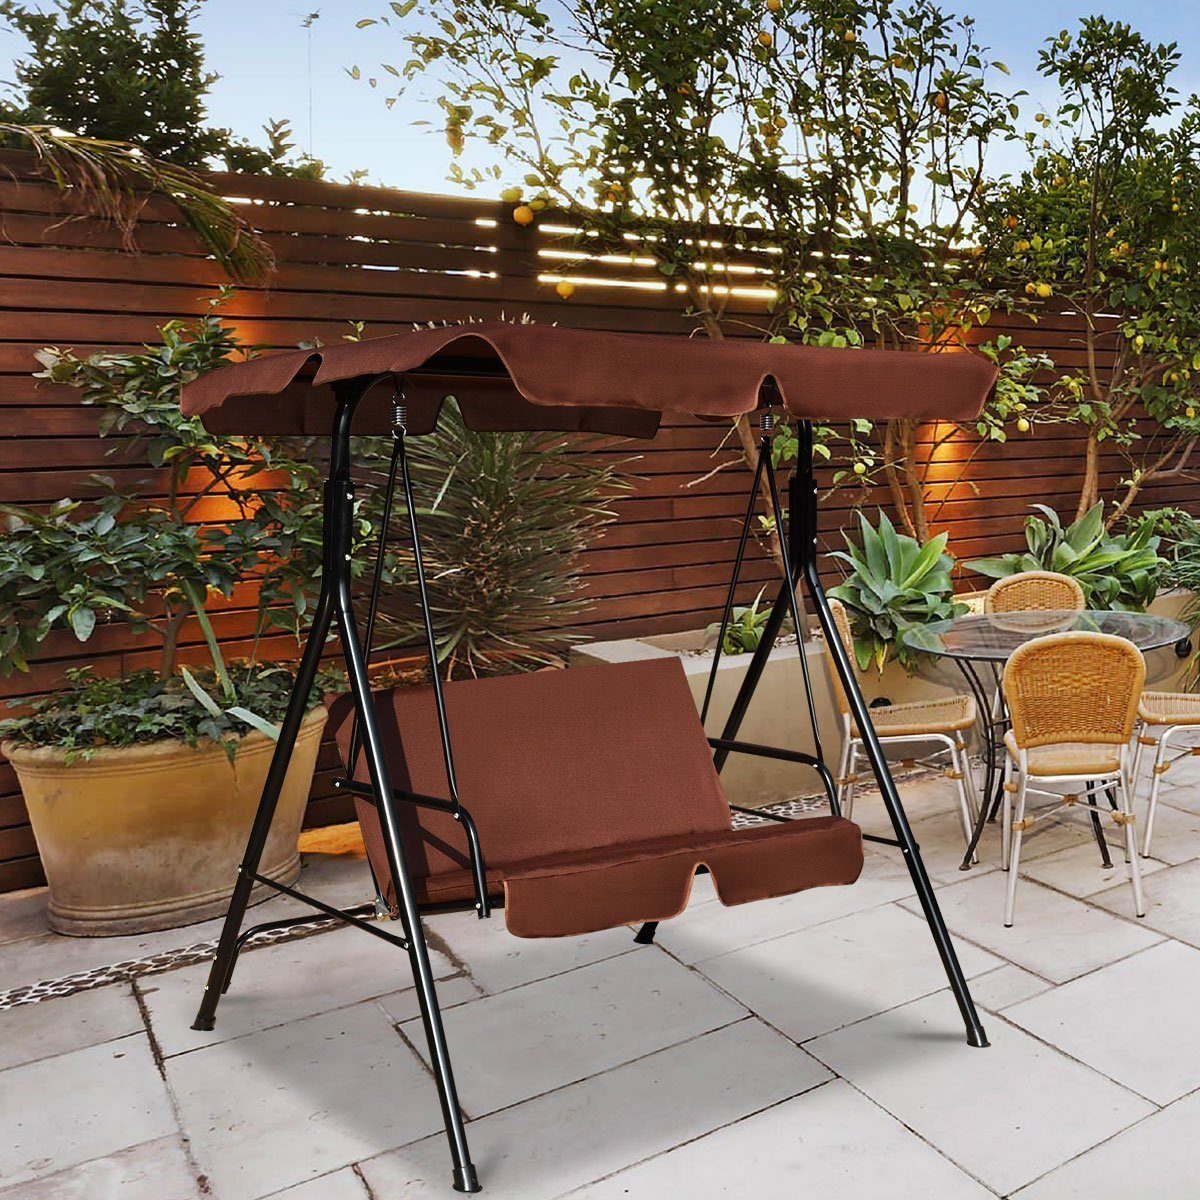 COSTWAY Hollywoodschaukel Gartenschaukel, Gartenliege, Sonnendach, 2-Sitzer Braun mit